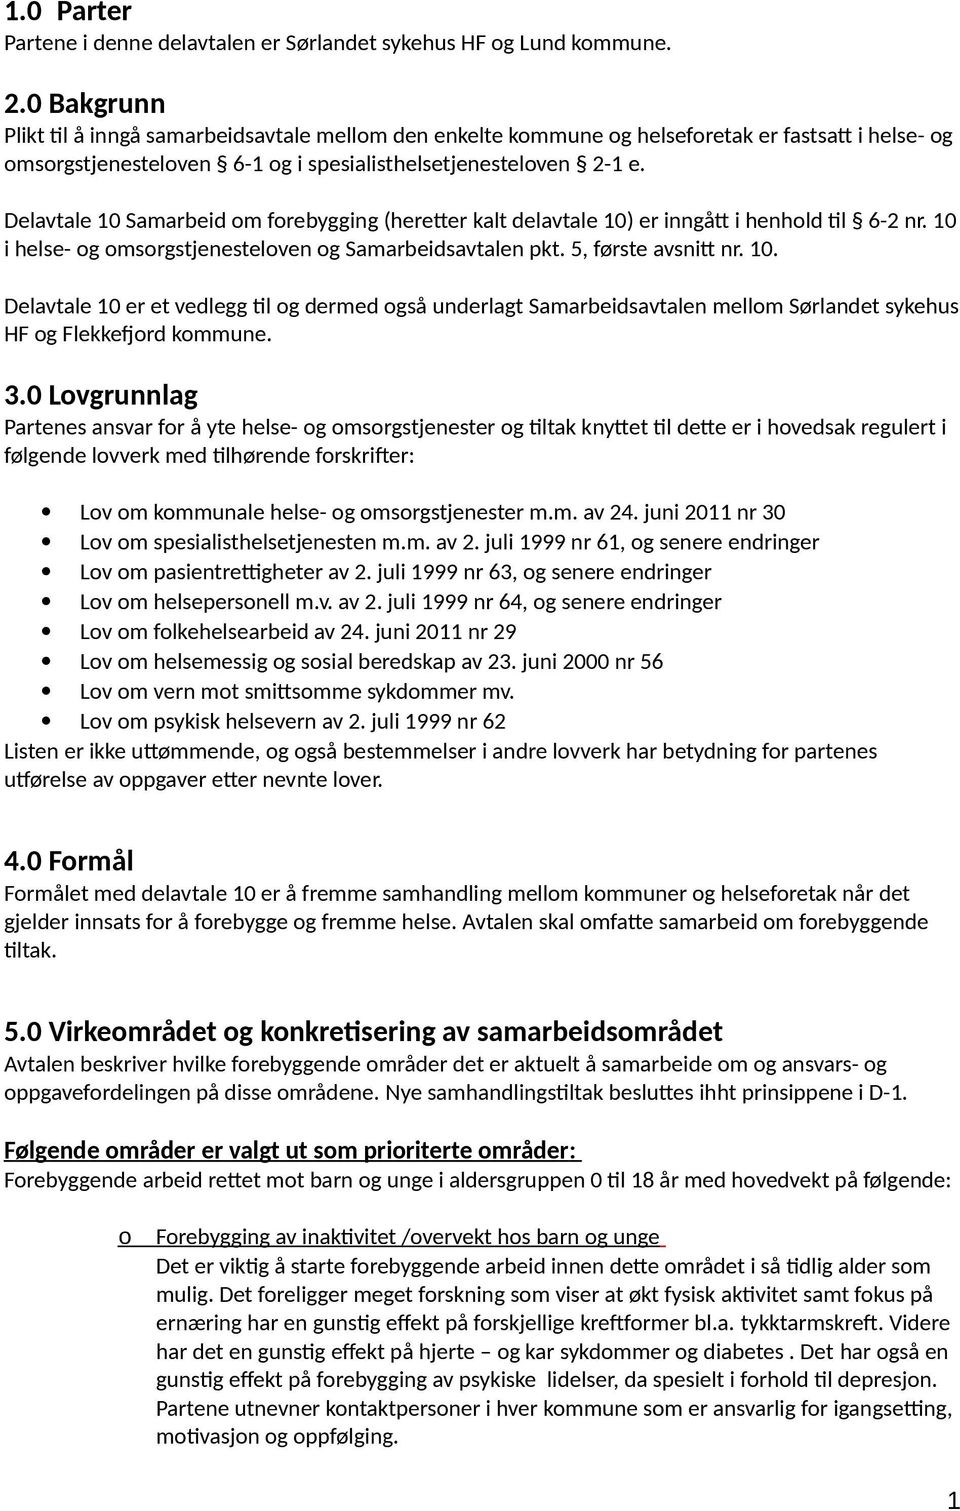 Delavtale 10 Samarbeid m frebygging (heretter kalt delavtale 10) er inngått i henhld til 6-2 nr. 10 i helse- g msrgstjenestelven g Samarbeidsavtalen pkt. 5, første avsnitt nr. 10. Delavtale 10 er et vedlegg til g dermed gså underlagt Samarbeidsavtalen mellm Sørlandet sykehus HF g Flekkefjrd kmmune.